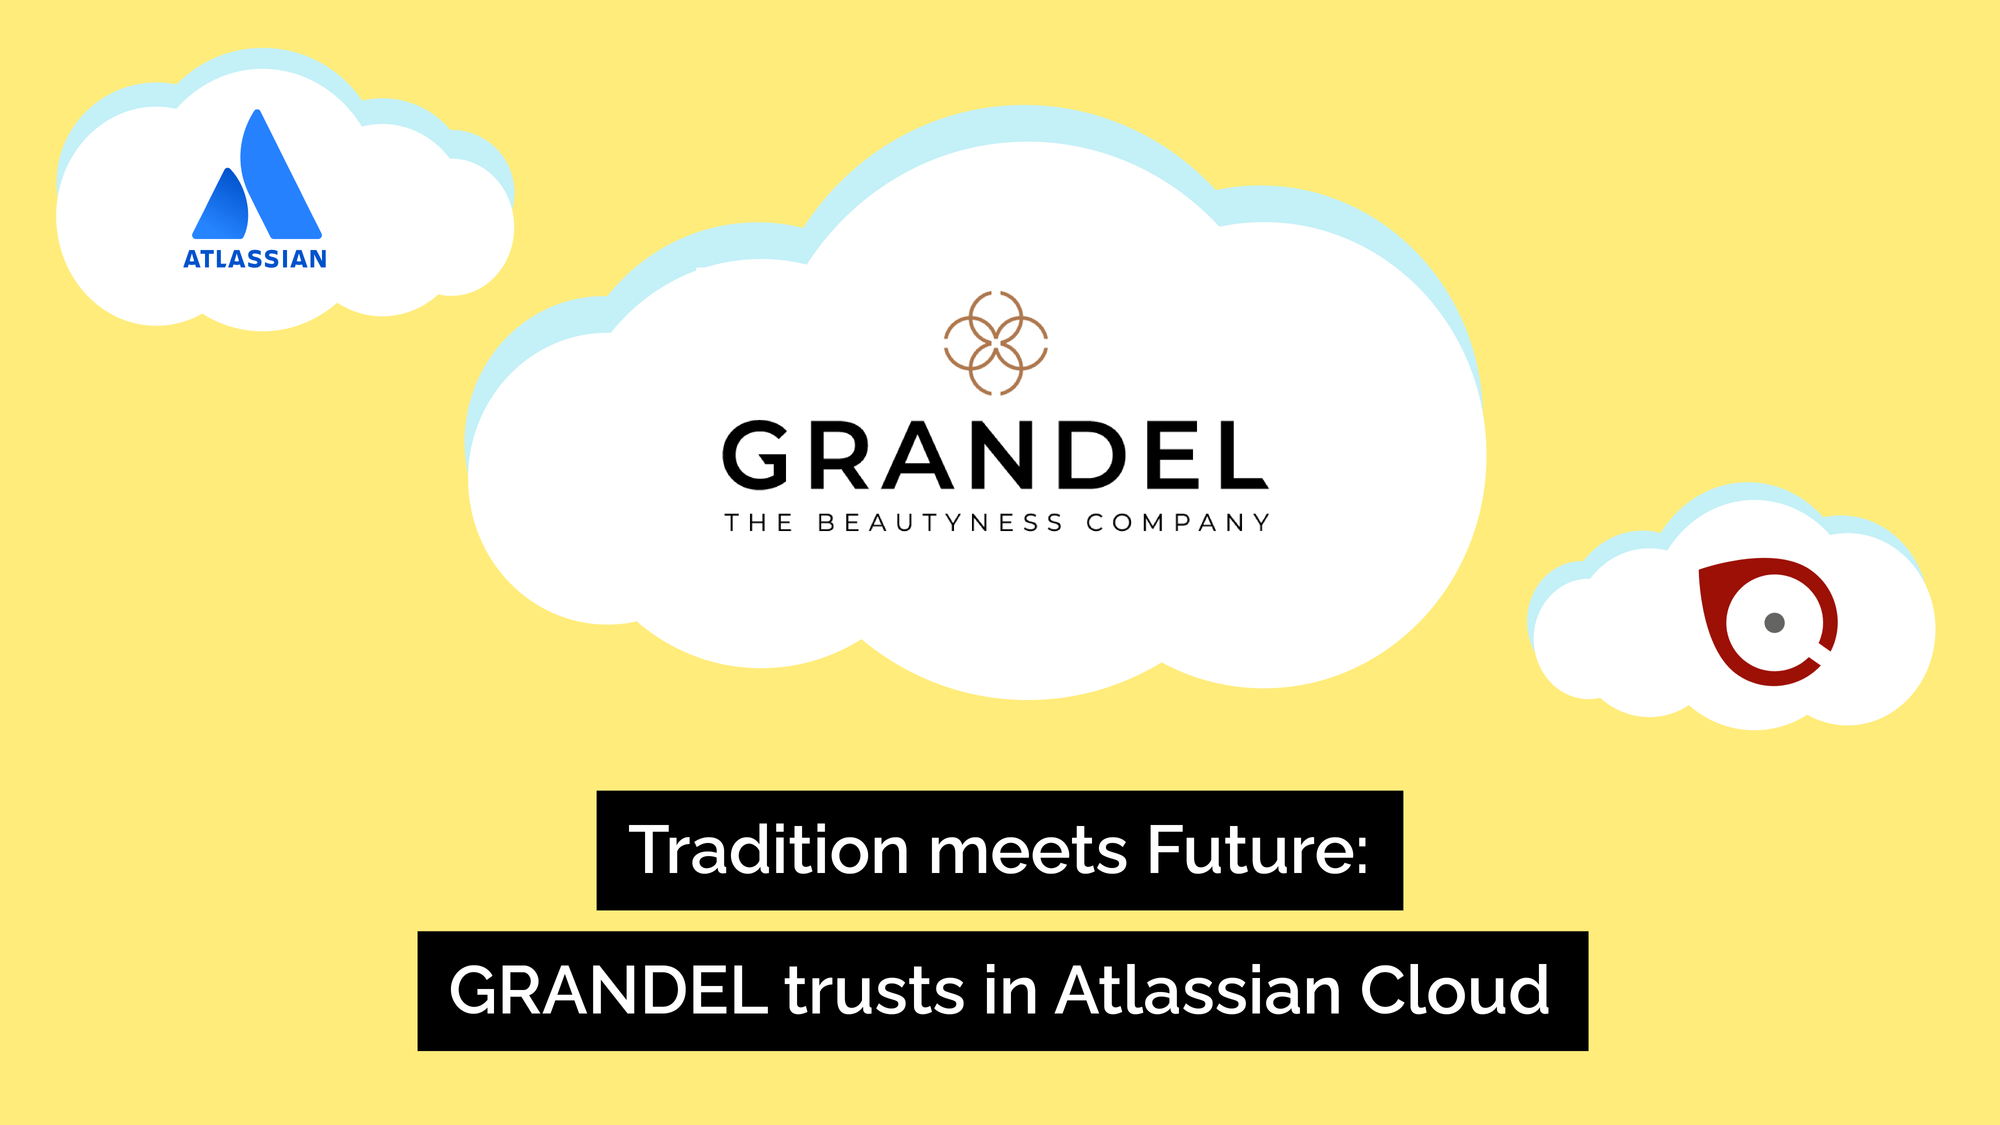 Tradition meets future: GRANDEL trusts in Atlassian cloud